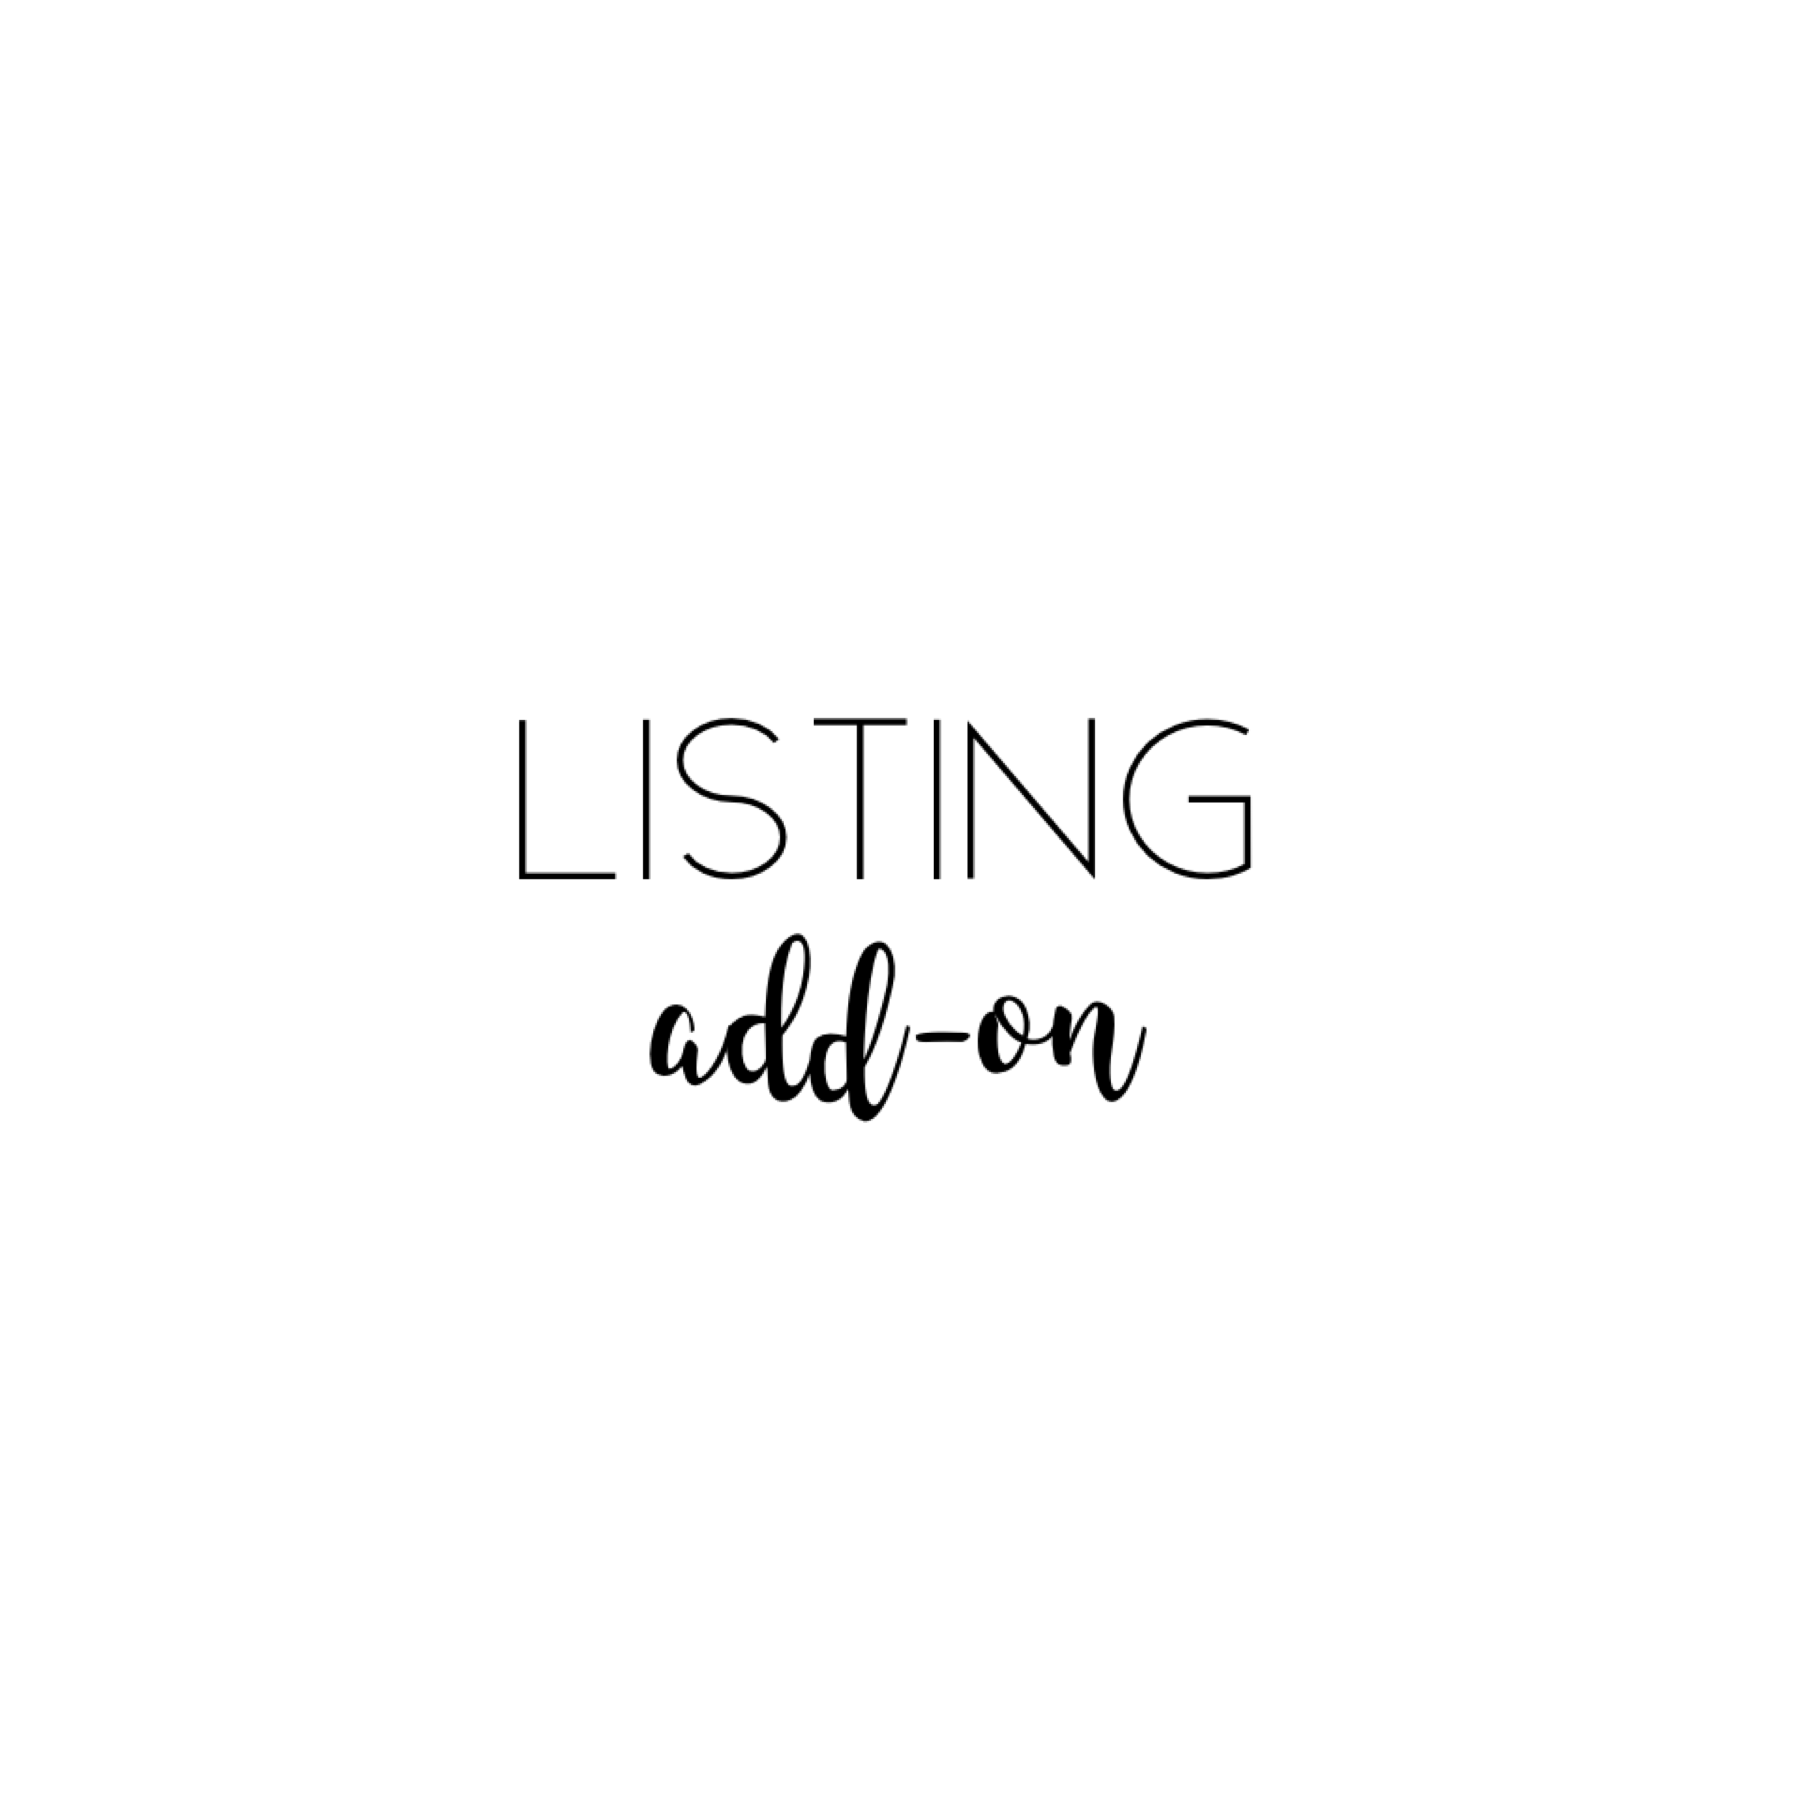 Add-On Listing